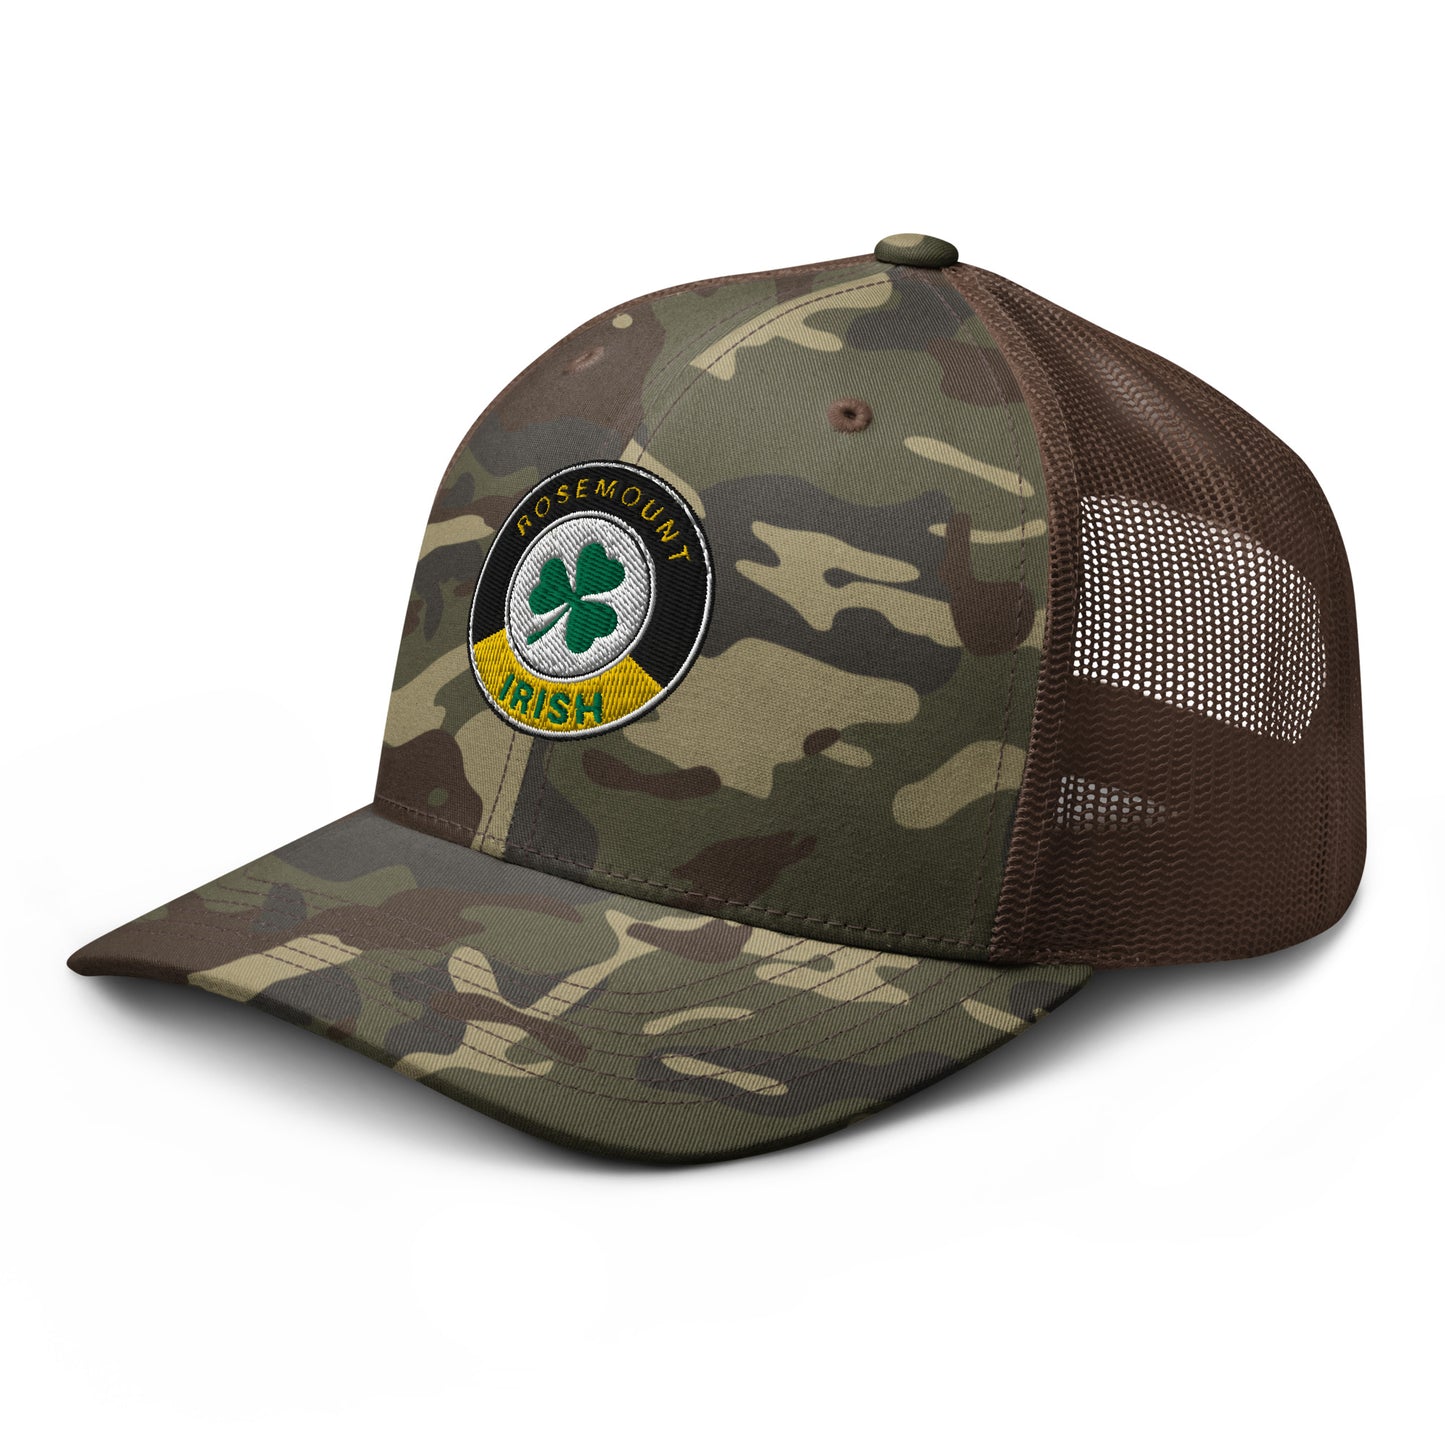 Camouflage trucker hat